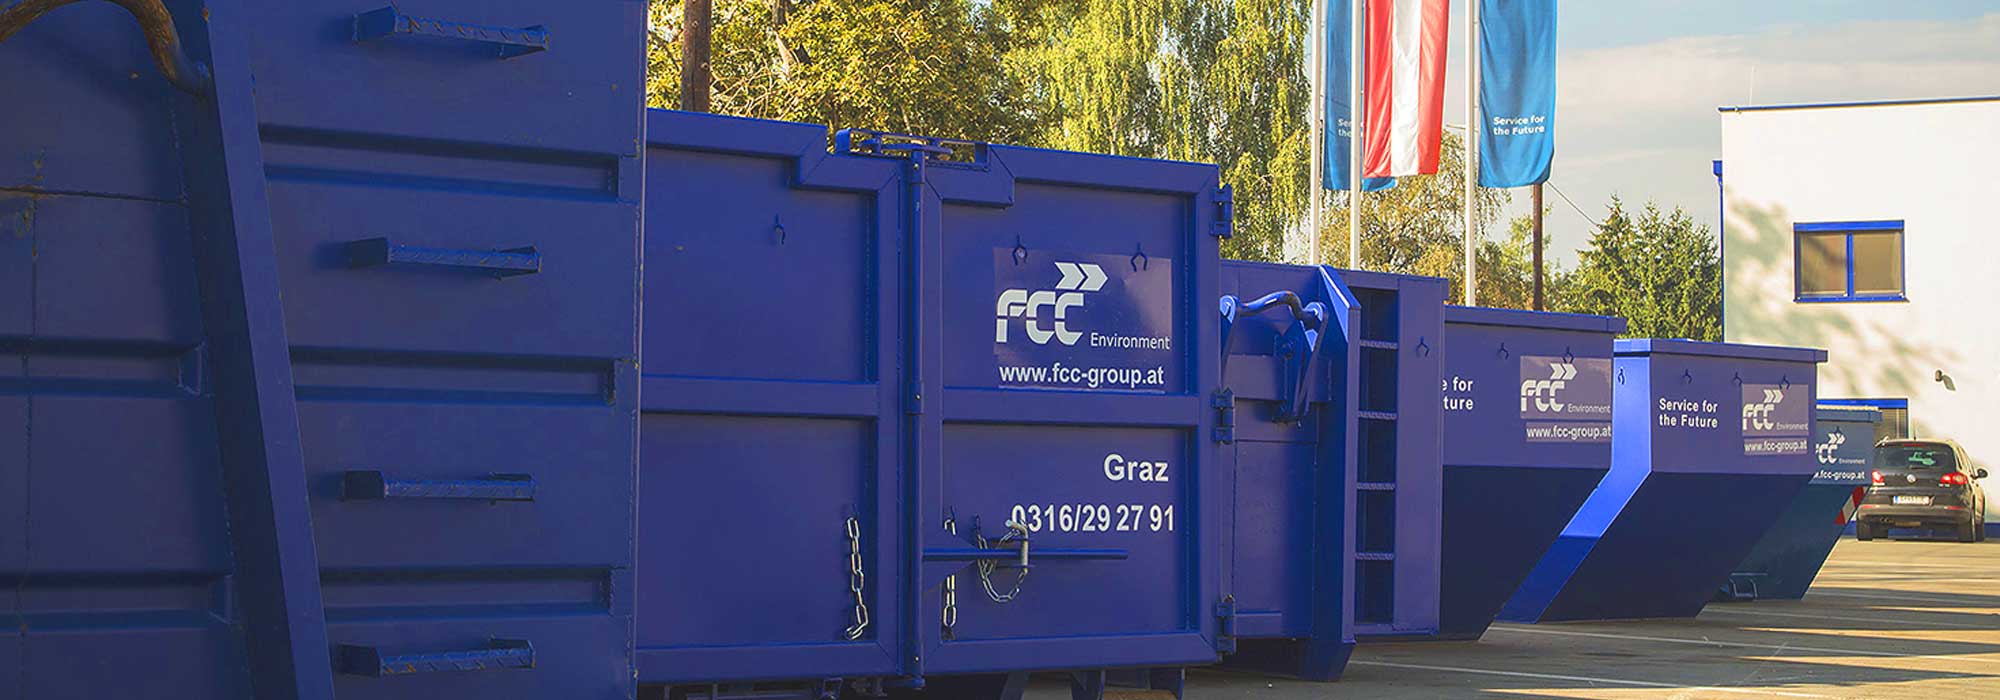 Blaue Abfallcontainer von Abfall Service online am FCC Standort in Graz